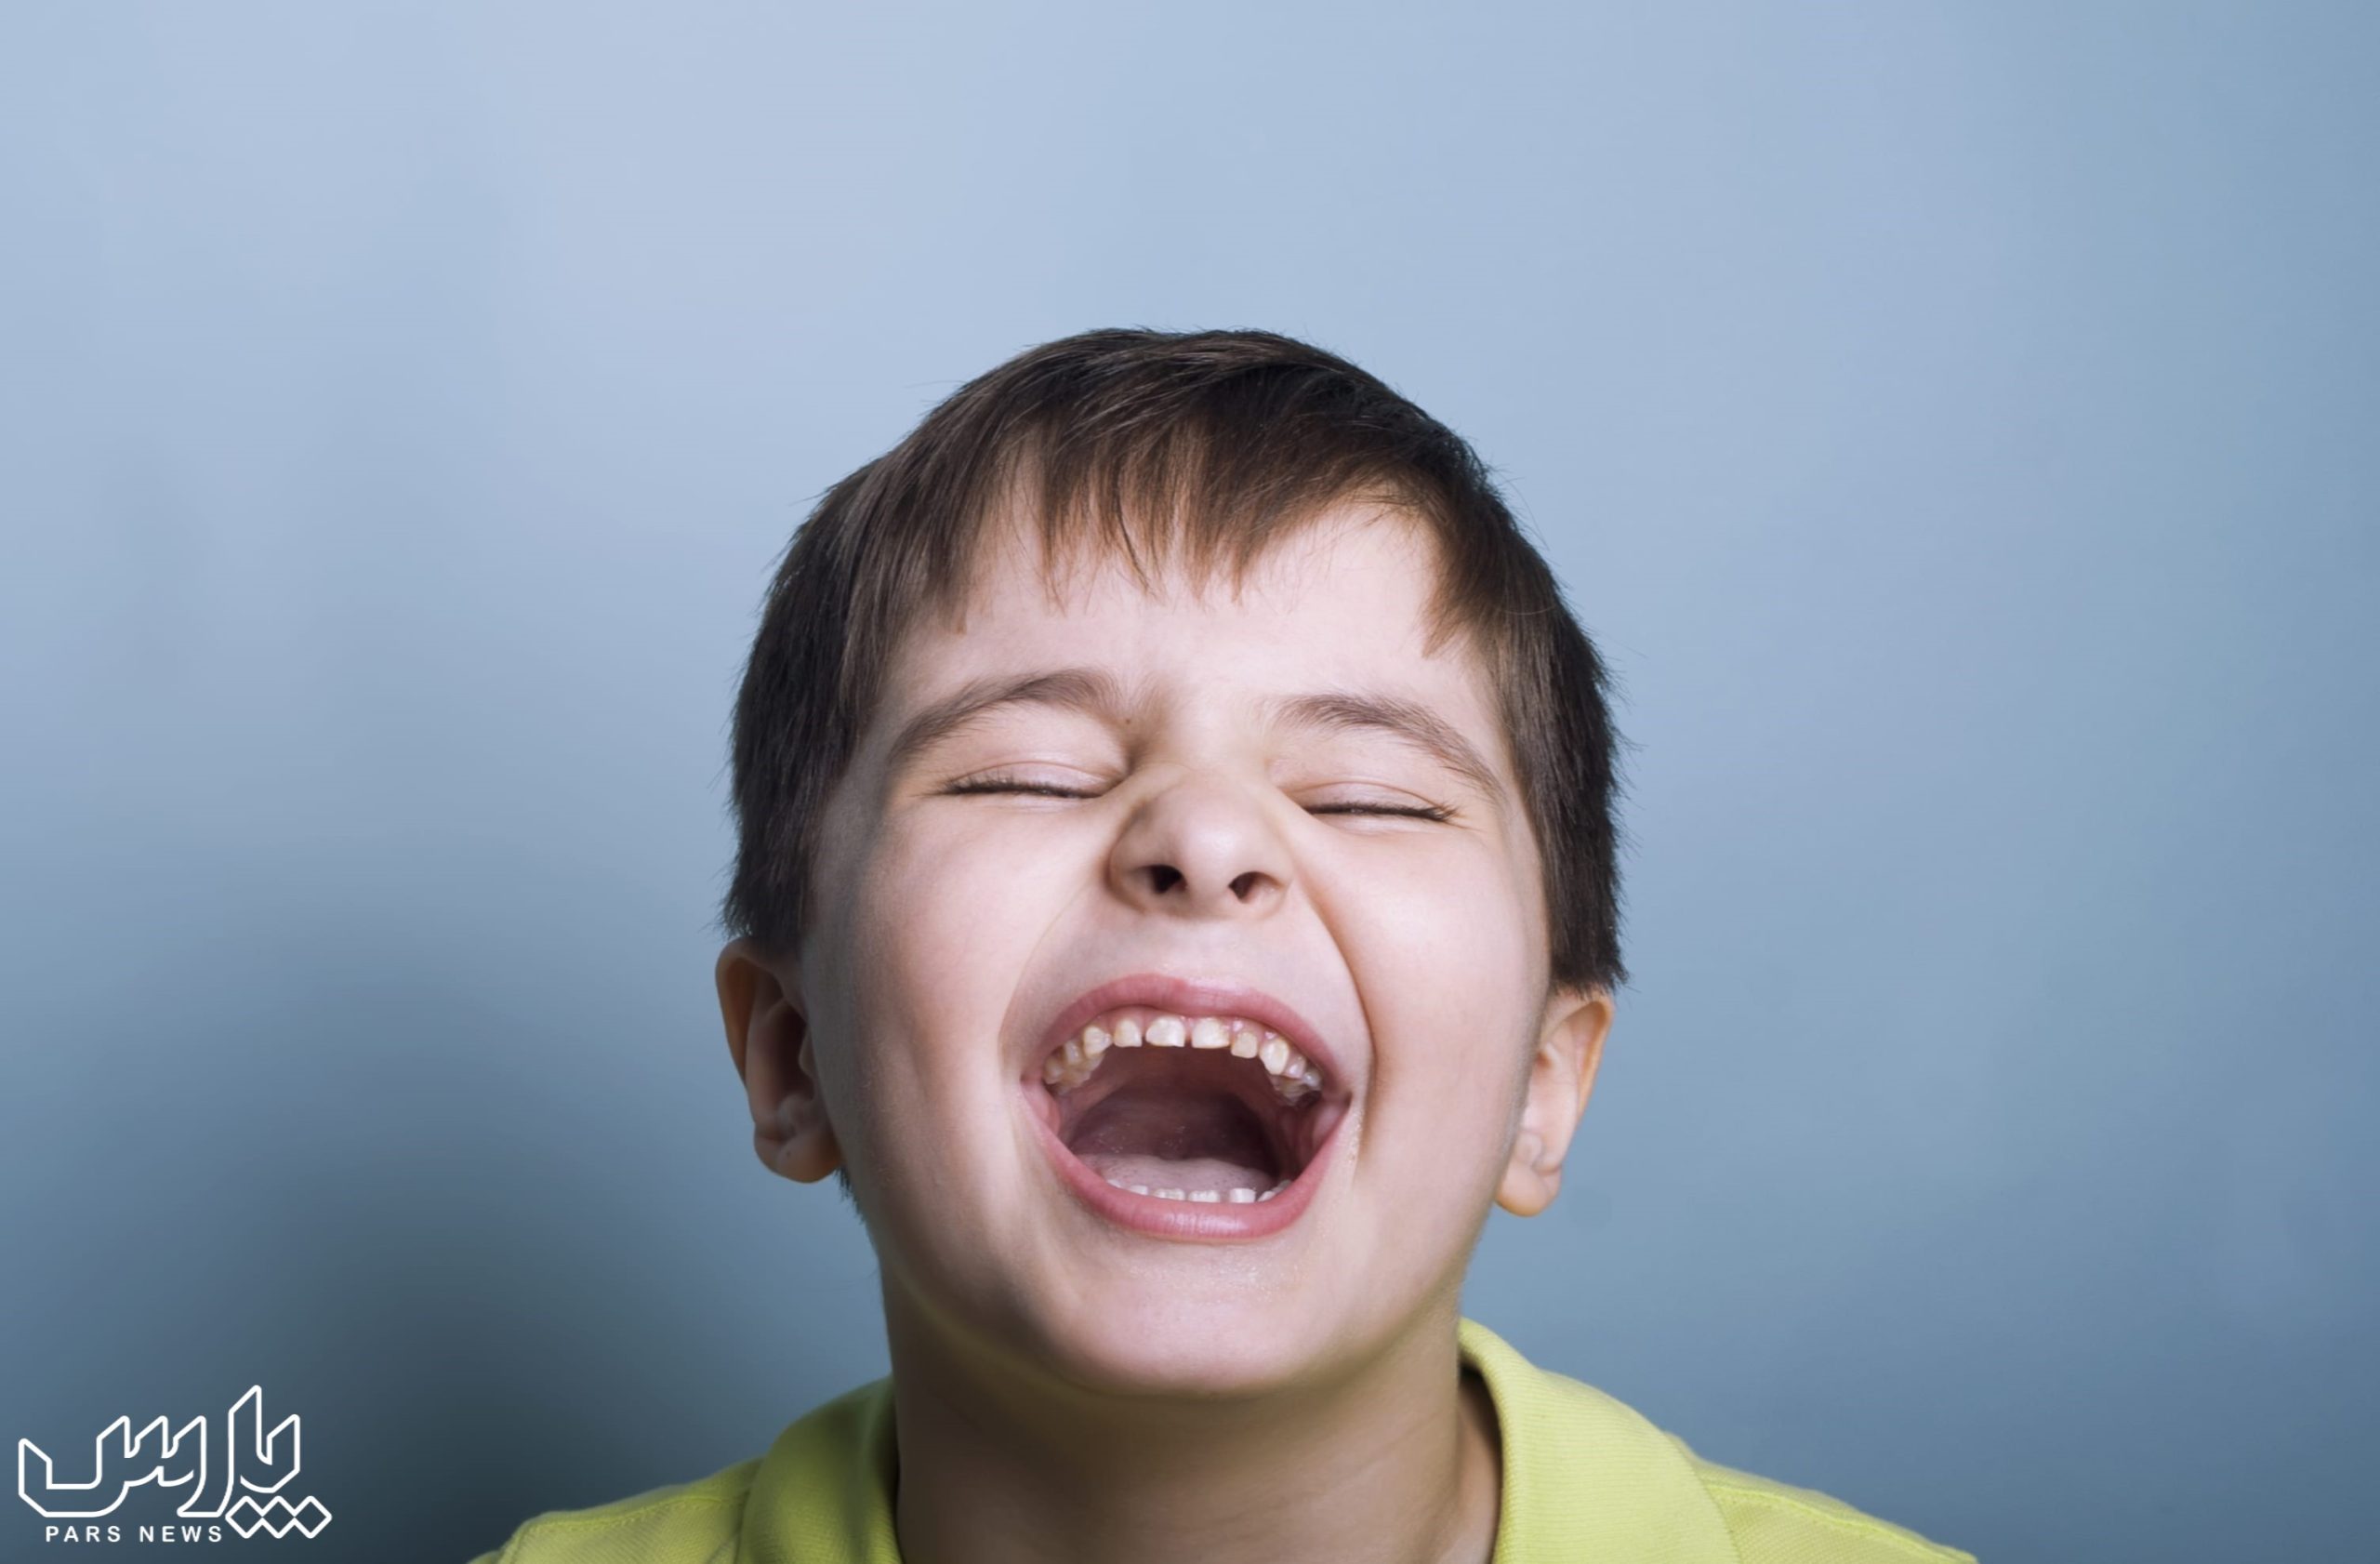 خندیدن - تقویت سیستم ایمنی بدن